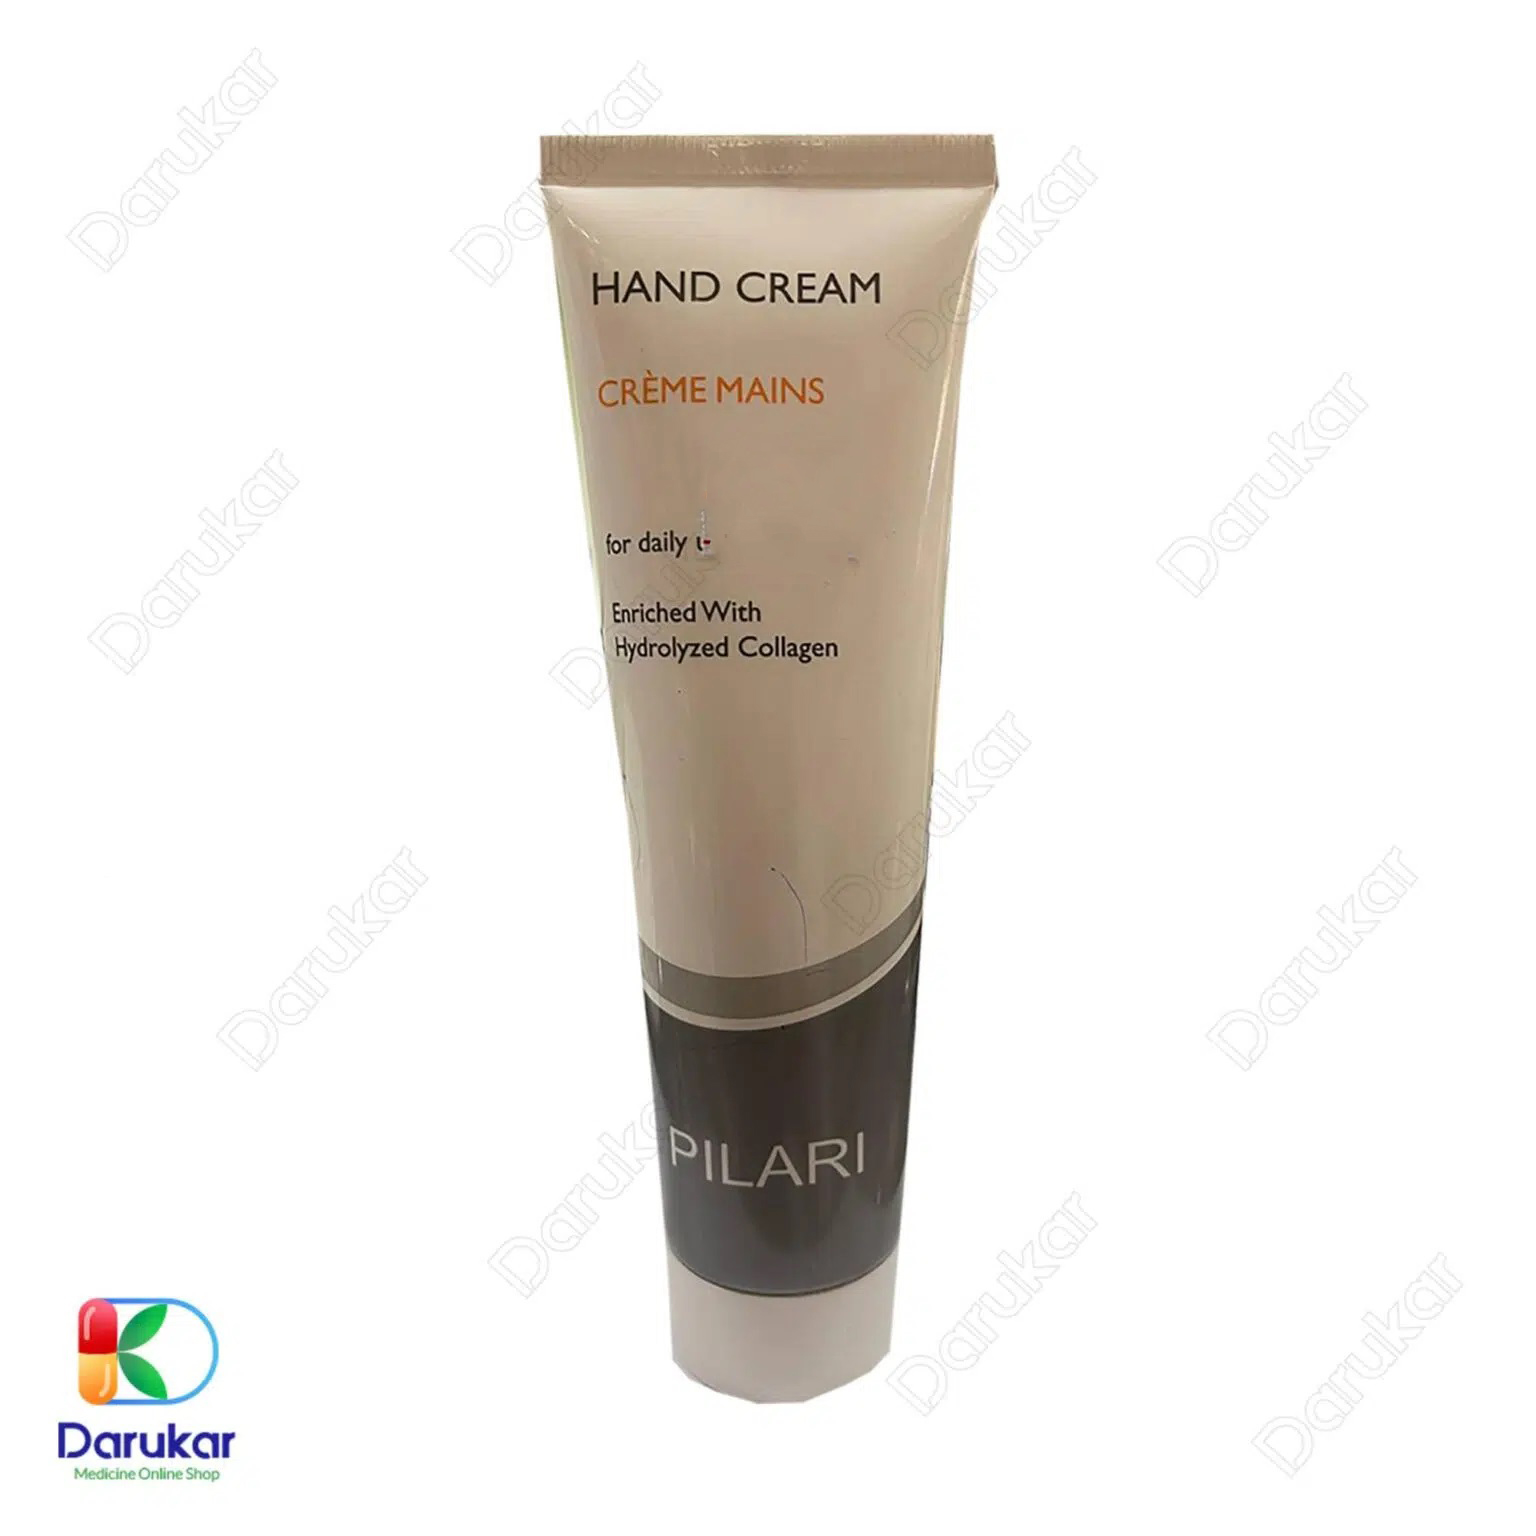 Pilari Humidifier Hand Cream 150 Ml 1 1536x1536 1